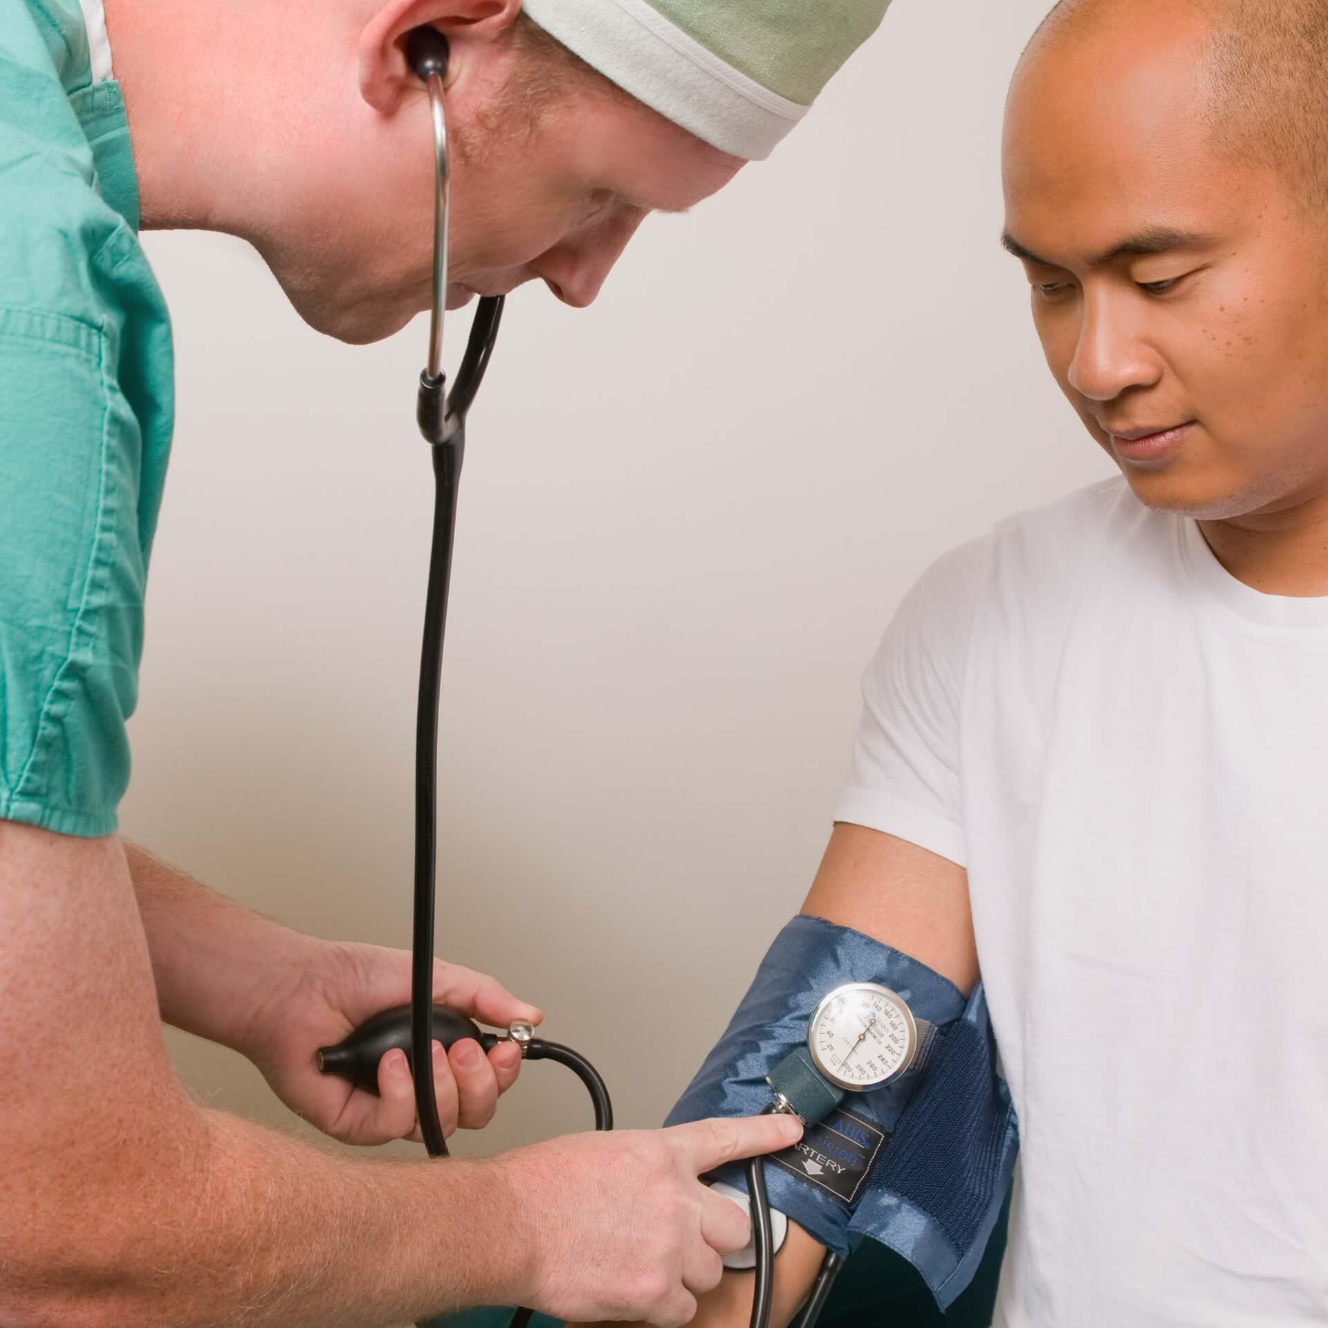 남자 간호사가 남자 환자의 혈압을 측정하고 있는 사진